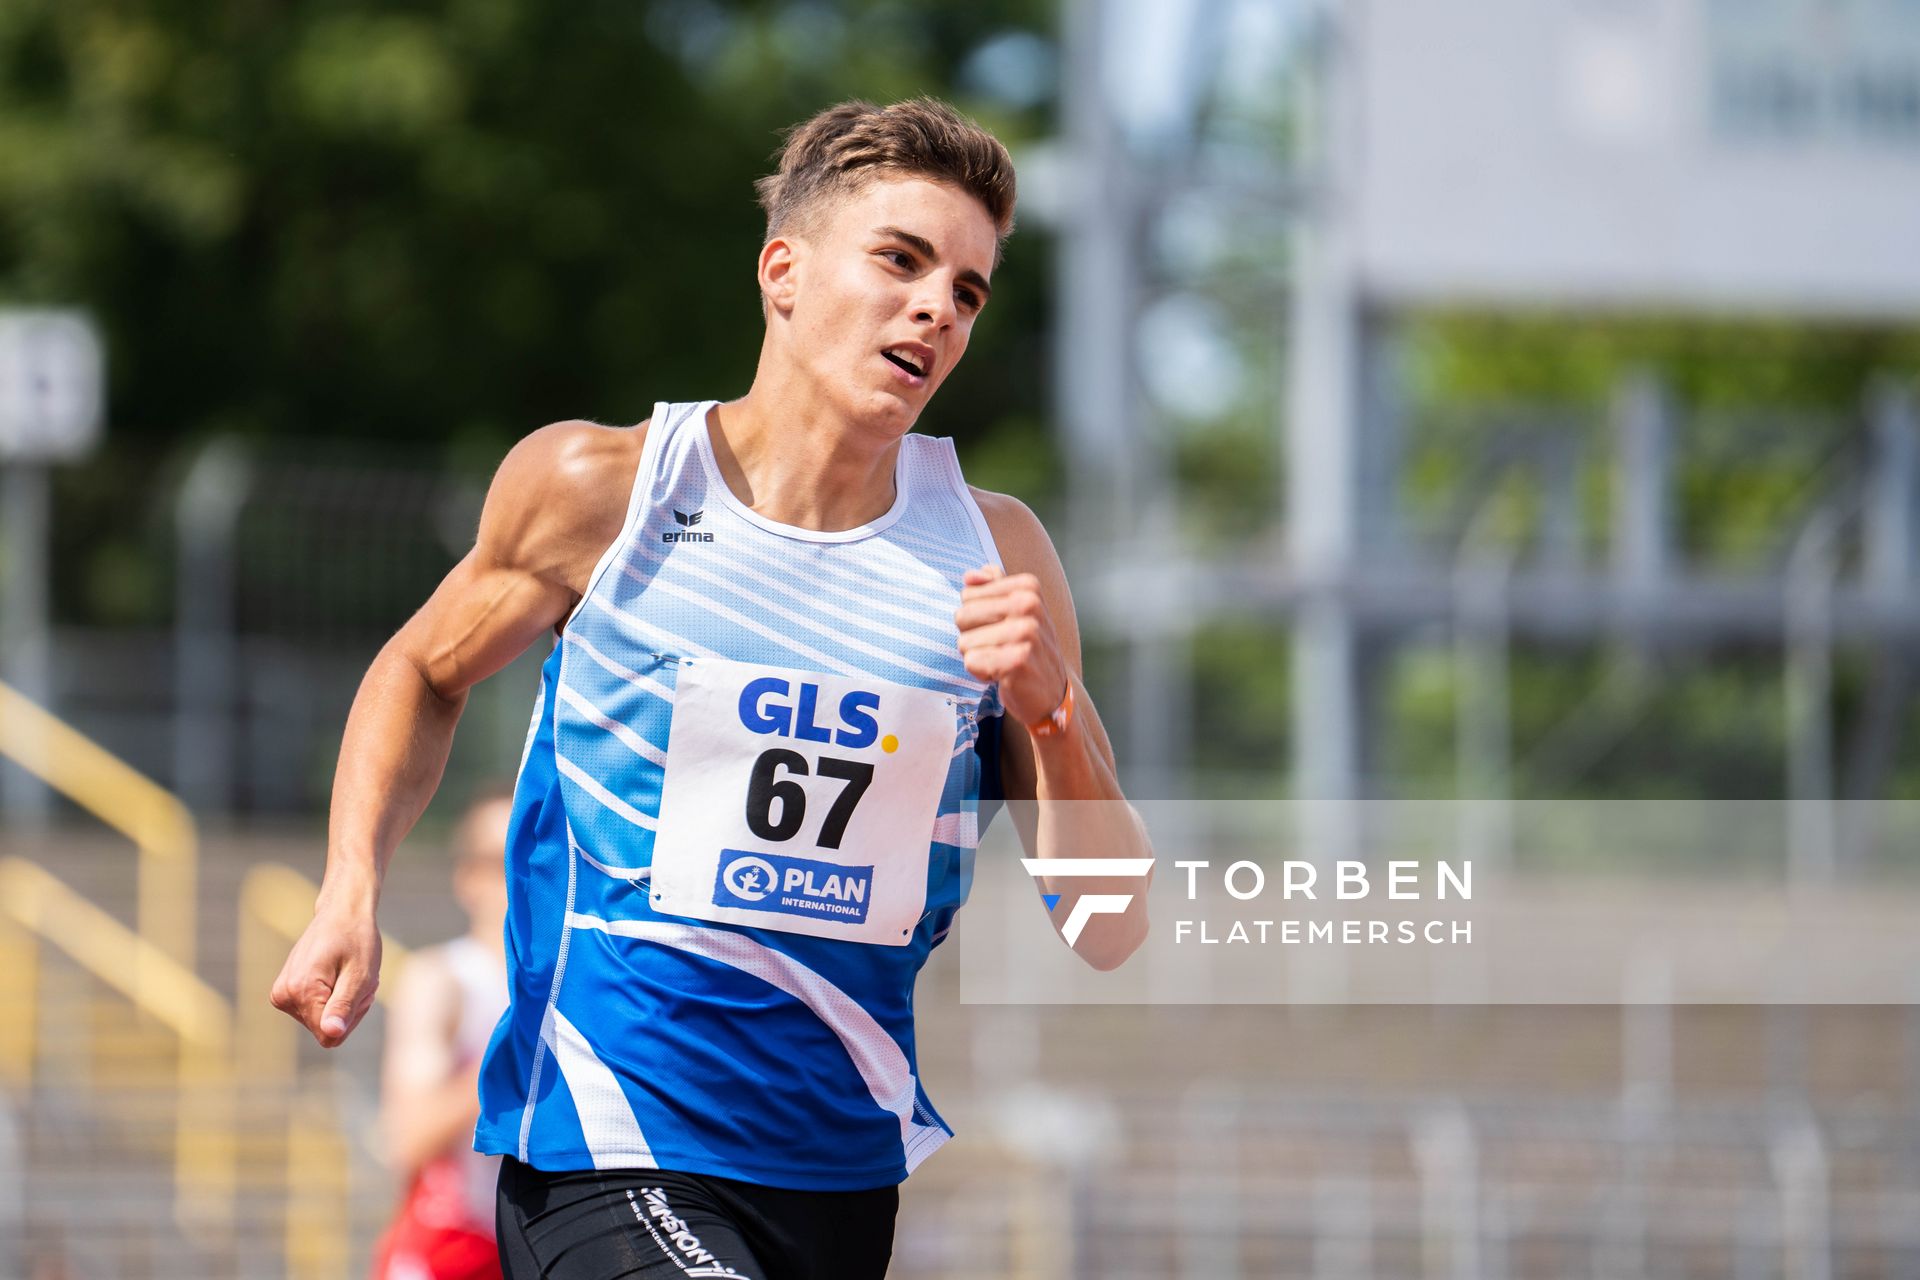 Alexander Senski (SR Yburg Steinbach) ueber 400m am 15.07.2022 waehrend den deutschen Leichtathletik-Jugendmeisterschaften 2022 in Ulm